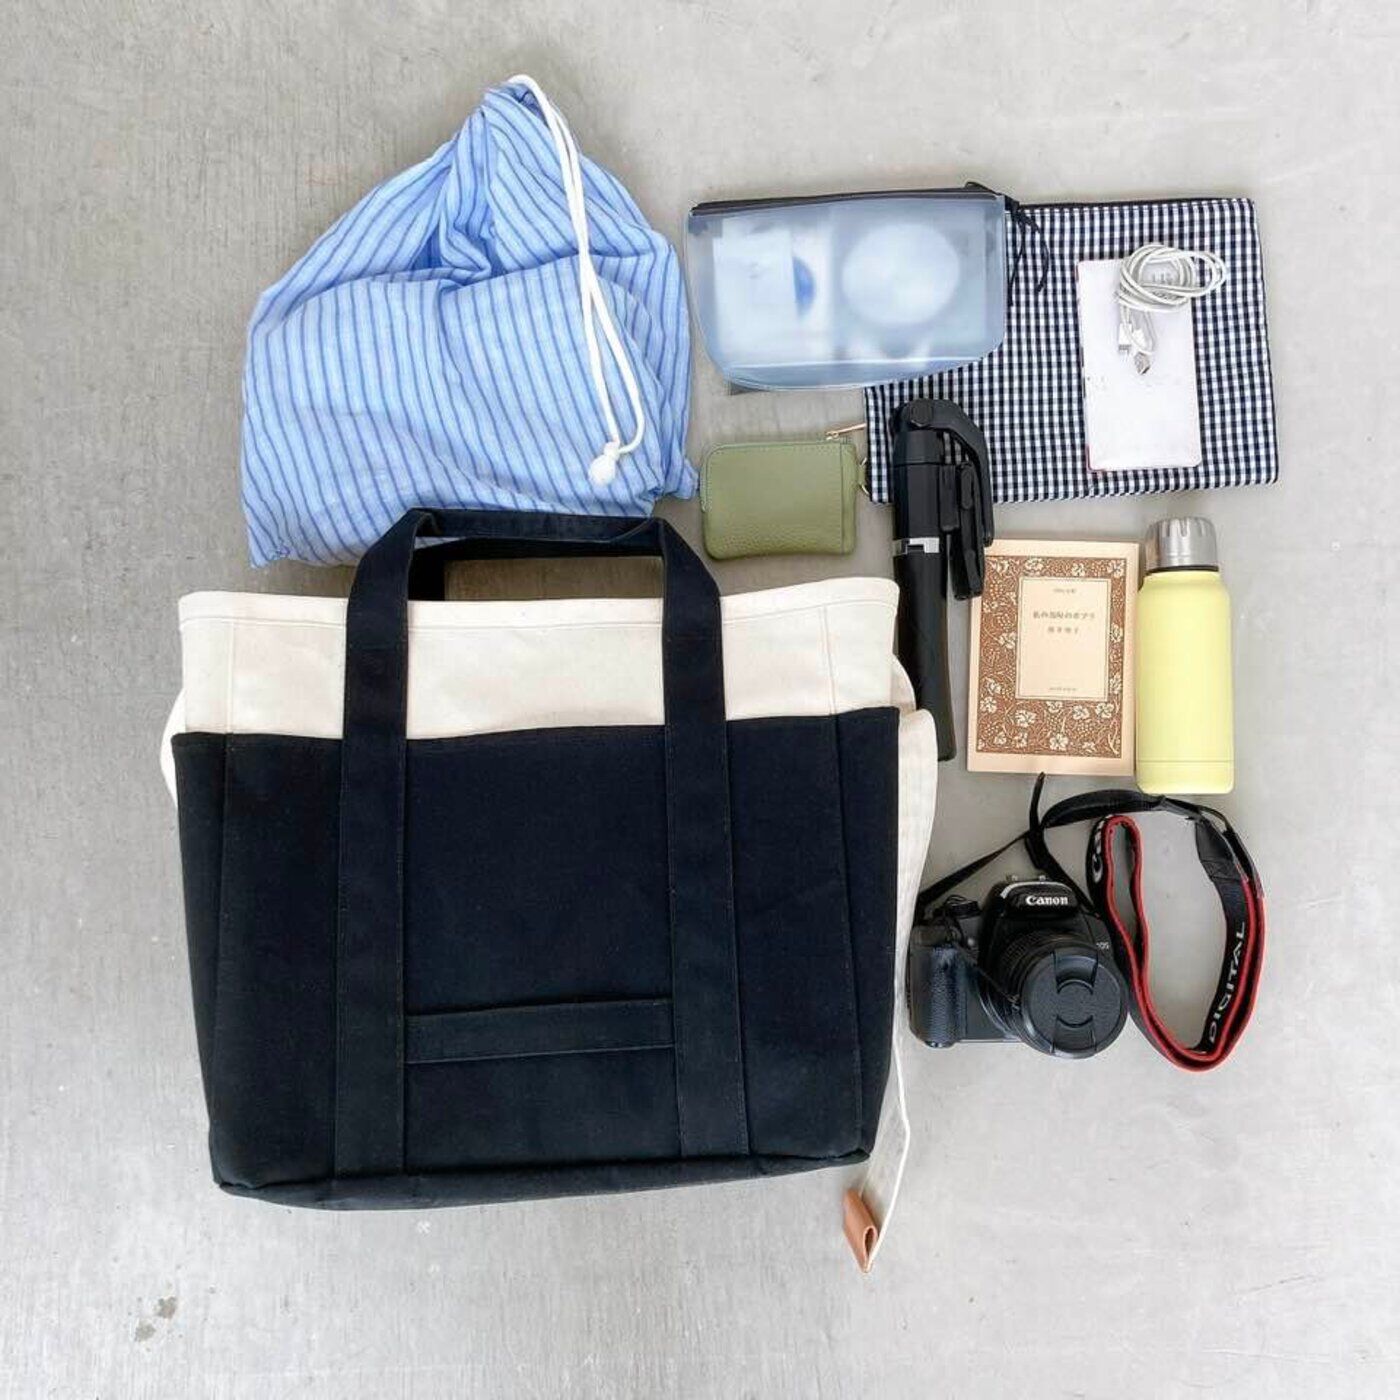 L'AMIPLUS|Kanoco×ラミプリュス　軽やか帆布のマザーズTバッグ|小旅行用バッグとしても使えます。着替えや化粧品、カメラを入れて。